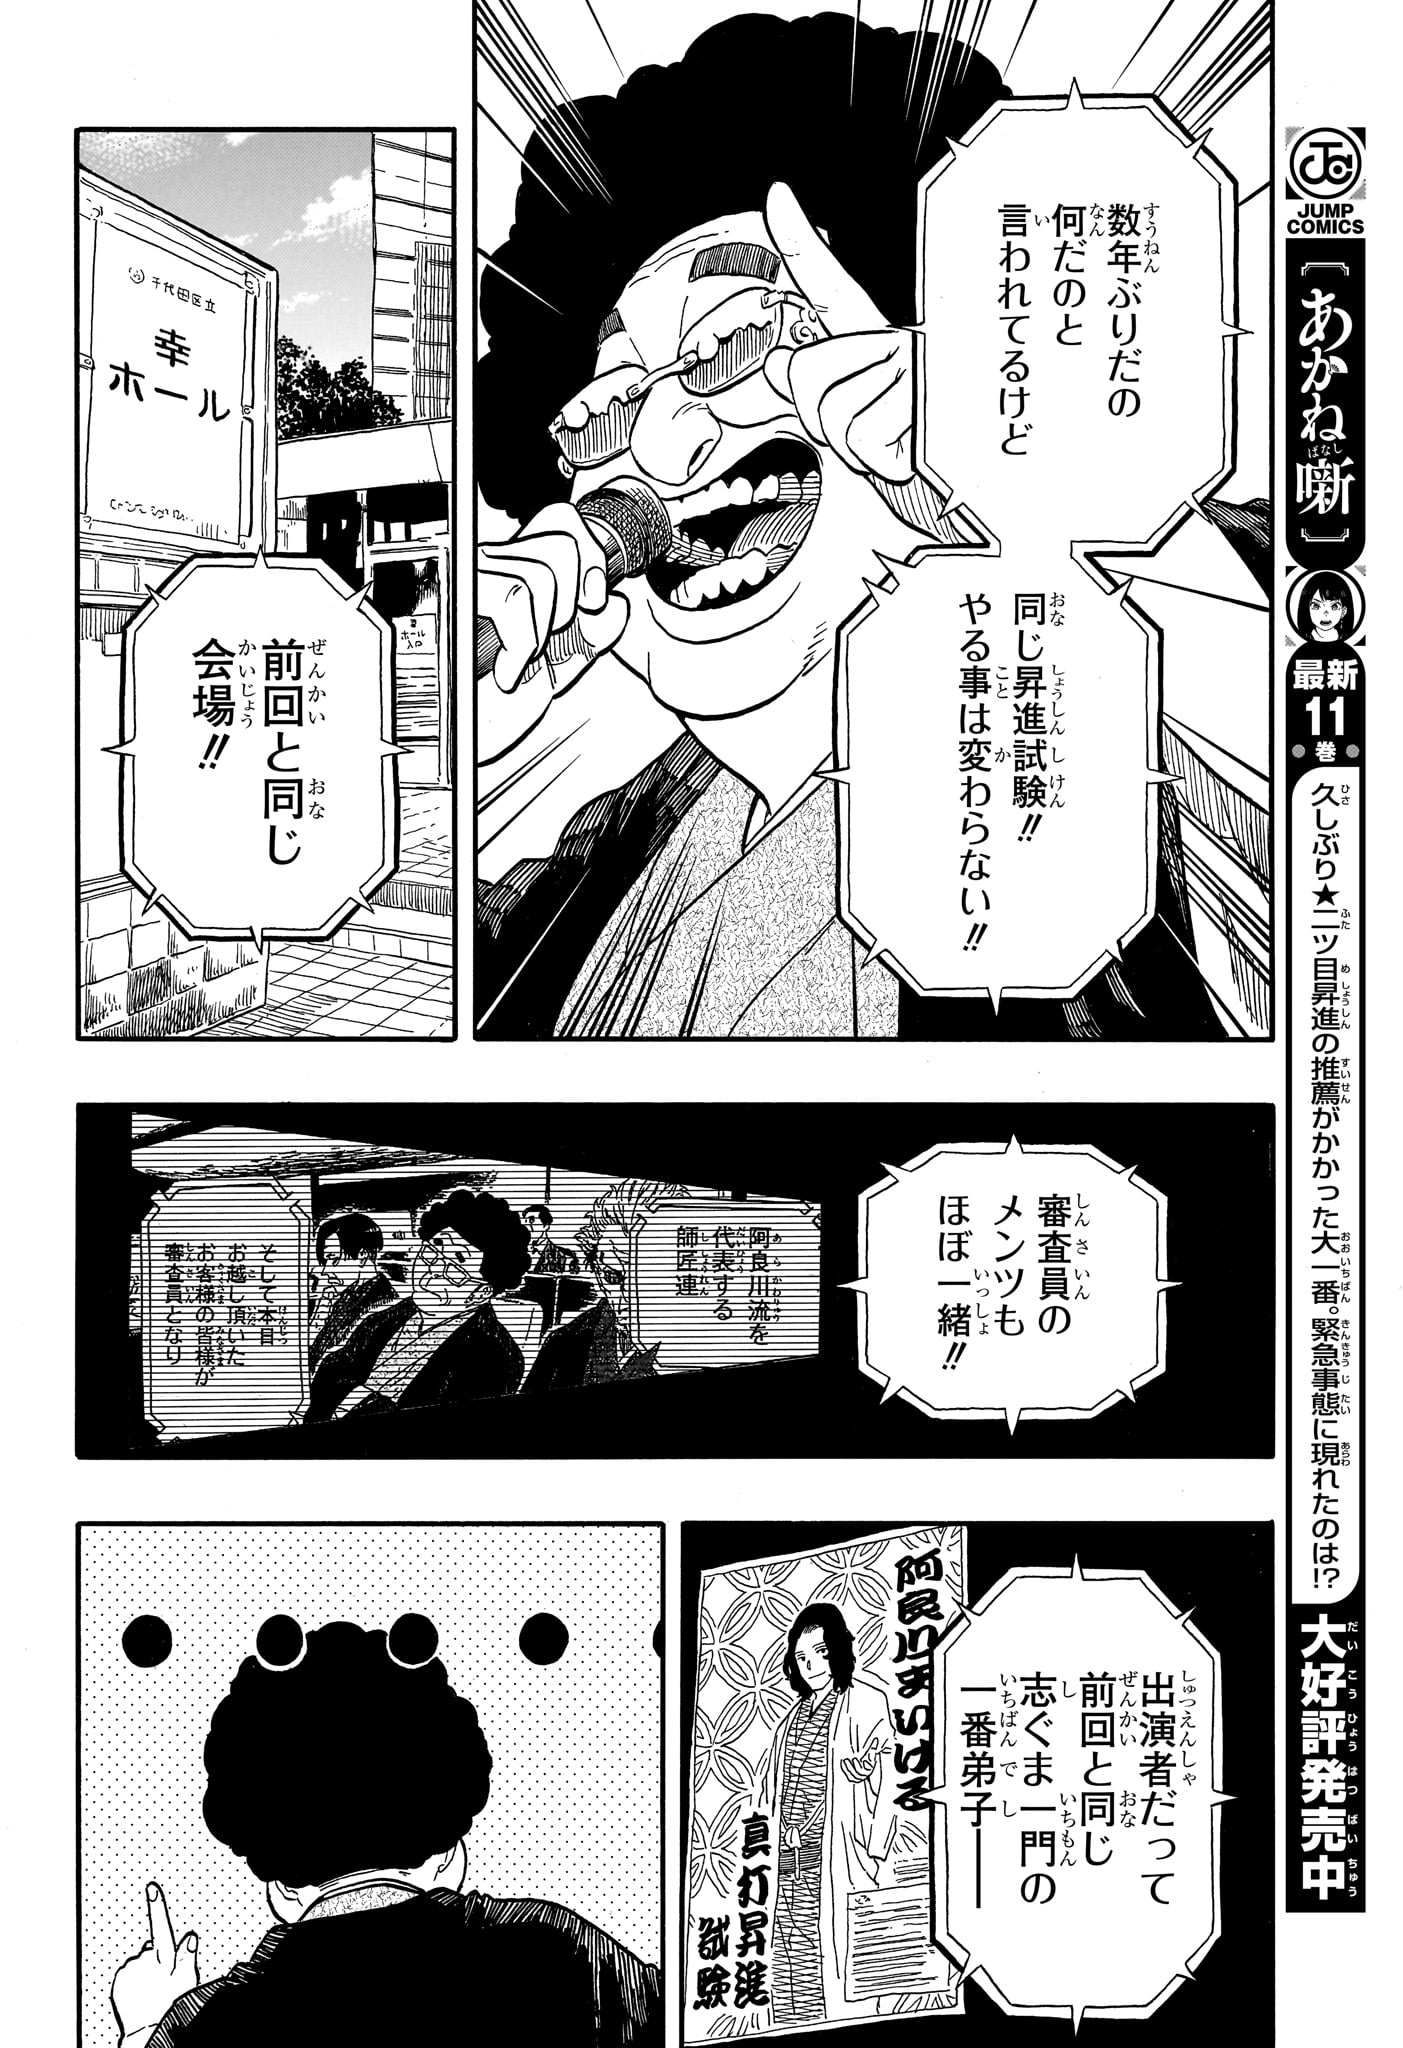 Akane-Banashi - Chapter 110 - Page 10